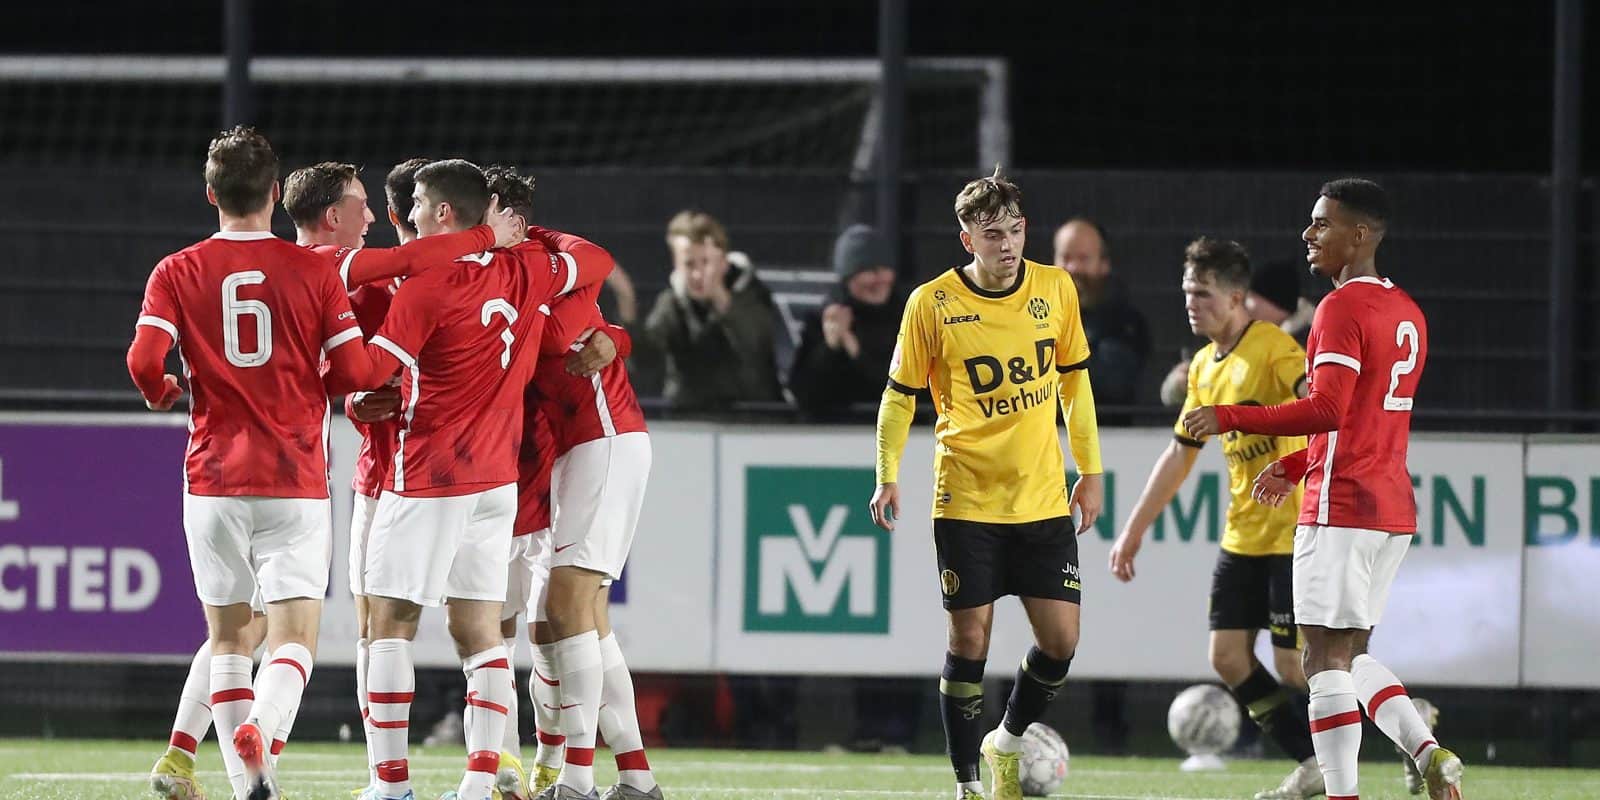 Jong AZ heeft vanavond in eigen huis met 2-0 gewonnen van Roda JC. De Alkmaarders klaarden de klus in de eerste door treffers van Buurmeester en Barasi. De ploeg van Martens stijgt daardoor naar een knappe vijfde plaats op de ranglijst.